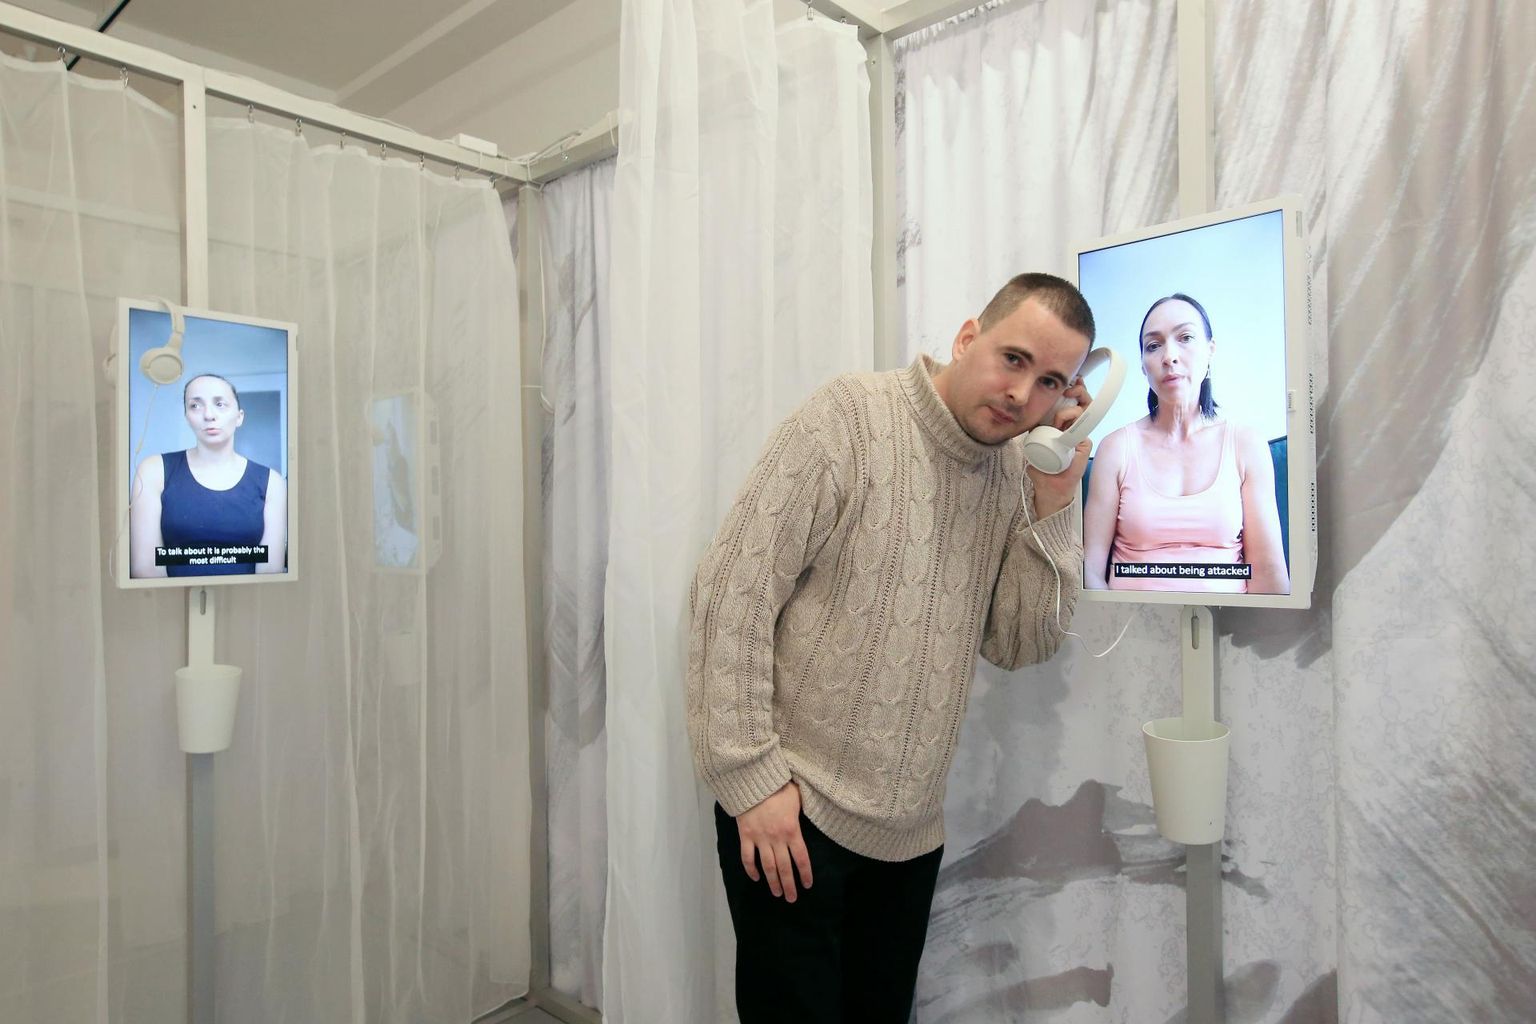 Hullunud Tartu eestvedaja Siim Lill kontrollib Kogo galeriis näitusel, kuidas kõlab video hääl.